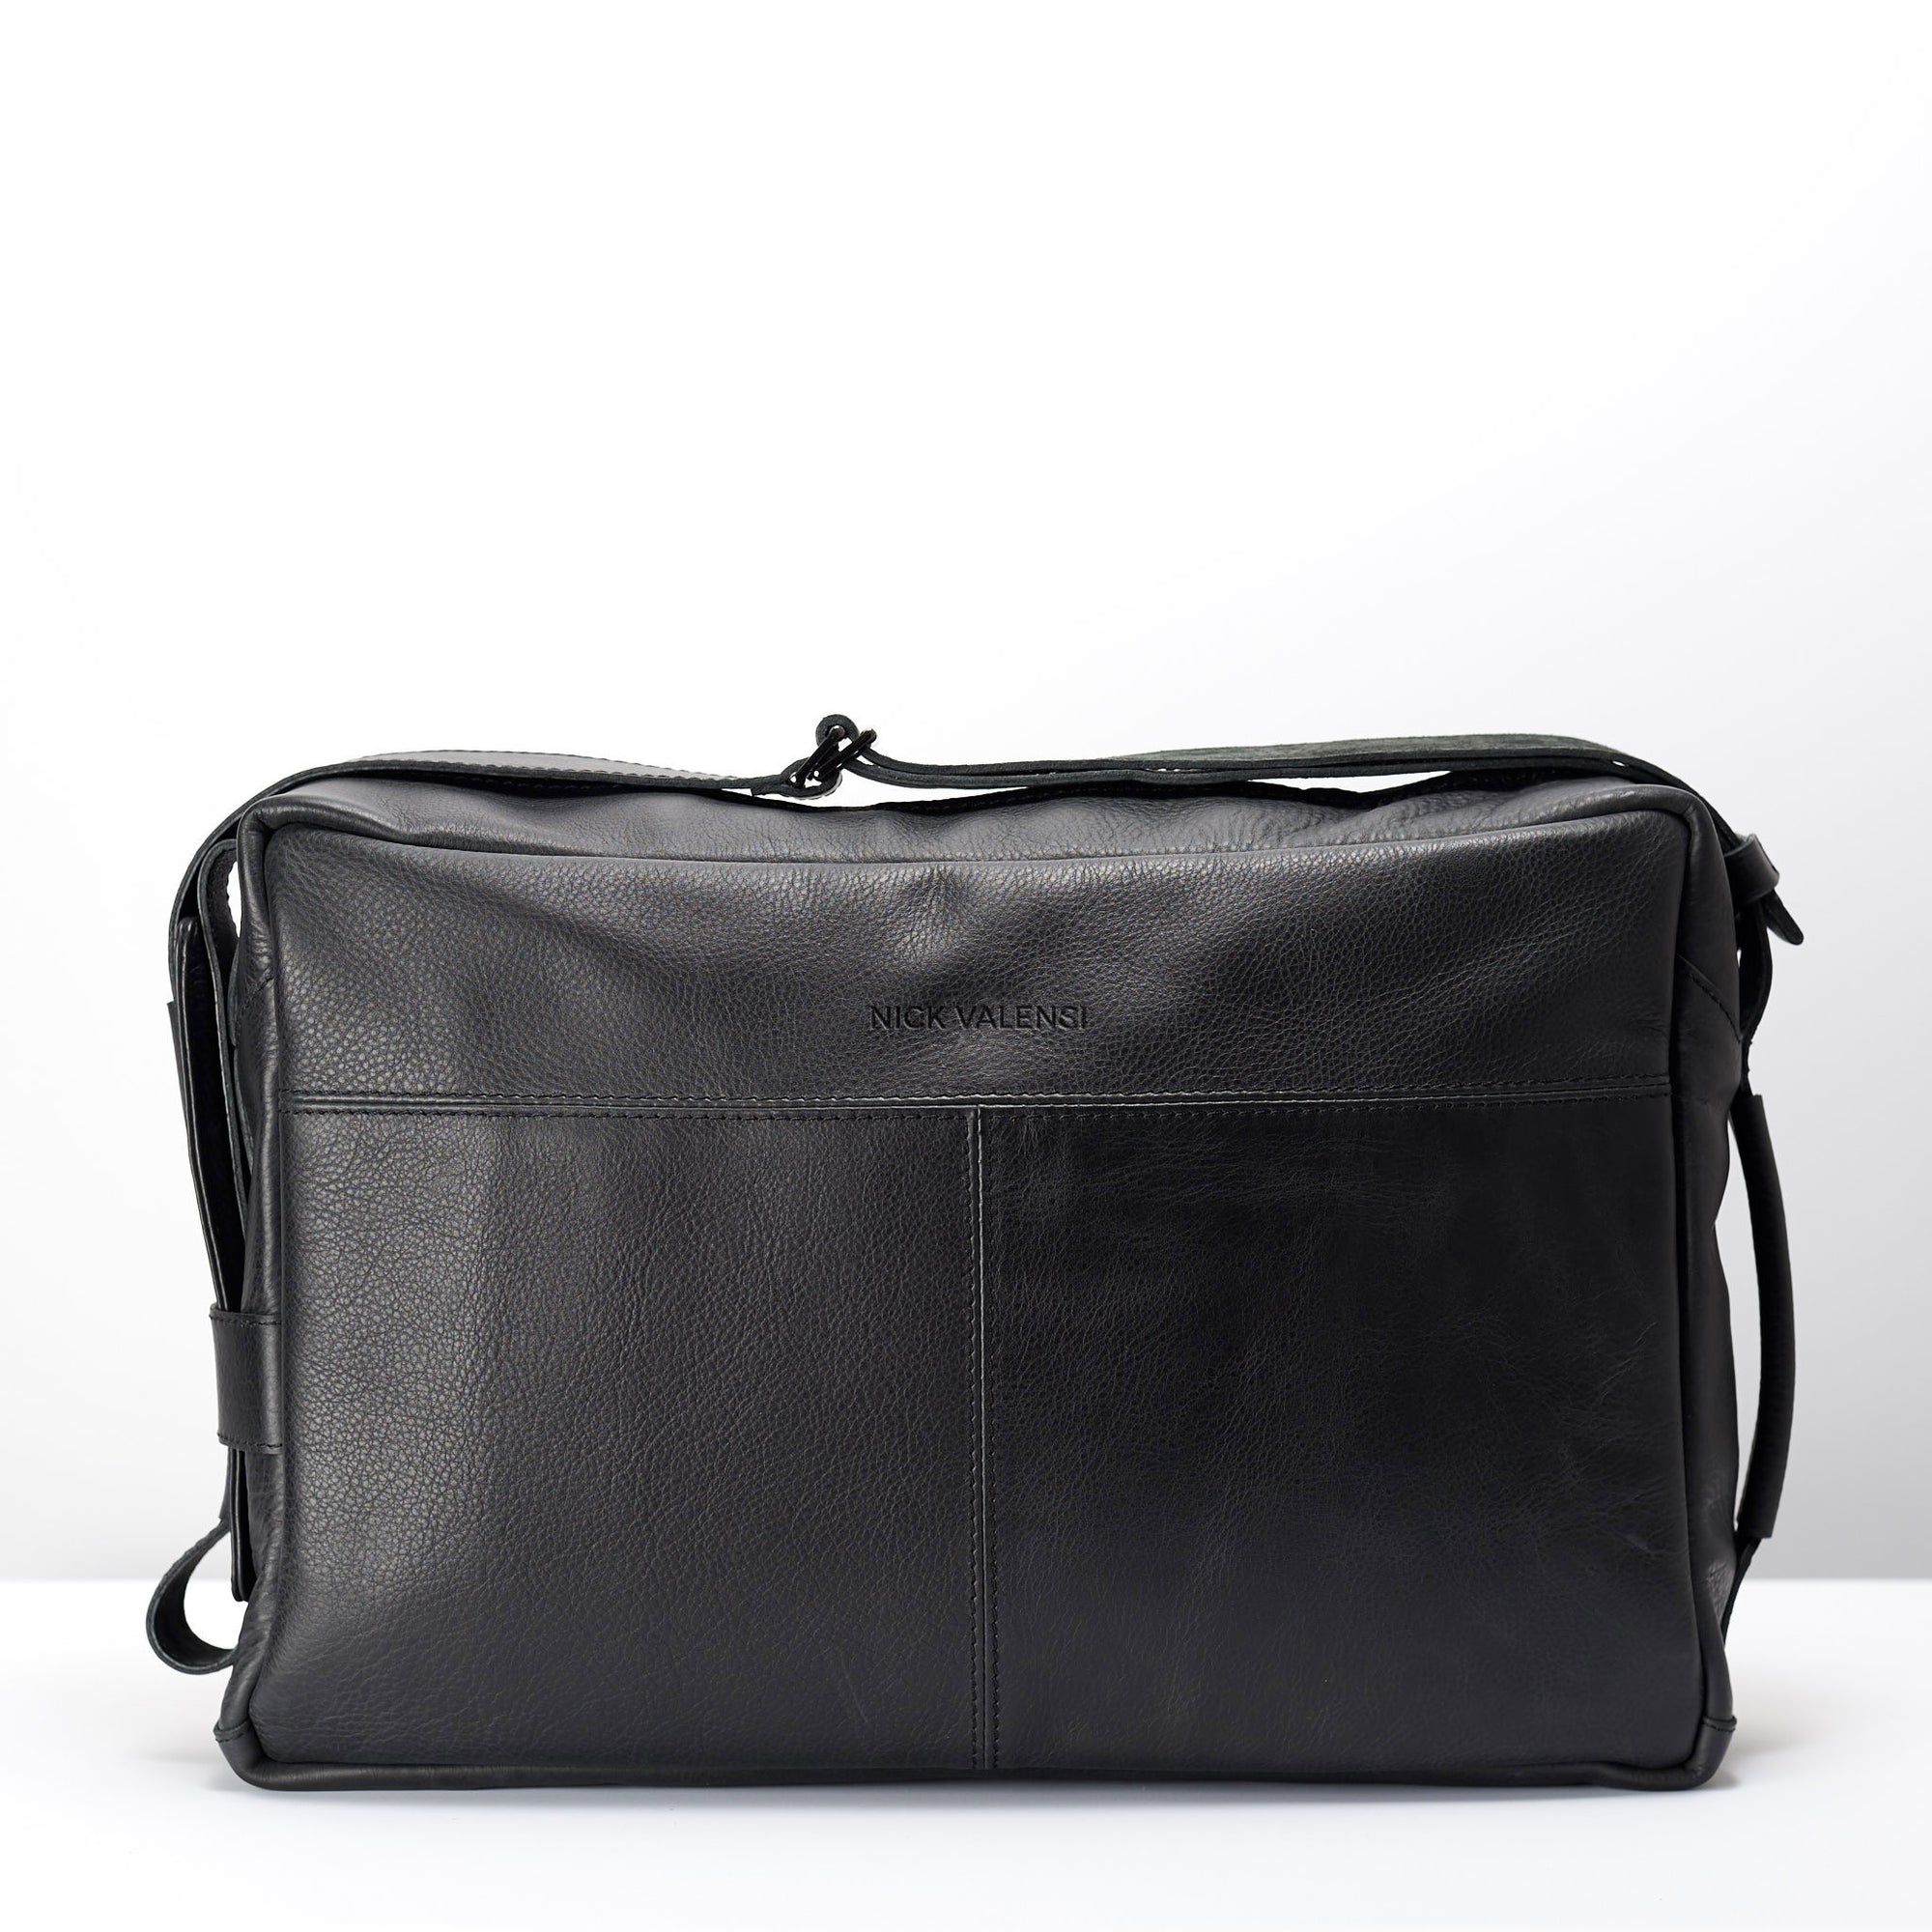 Back handmade leather messenger bag for men. Commuter bag, laptop leather bag by Capra Leather.